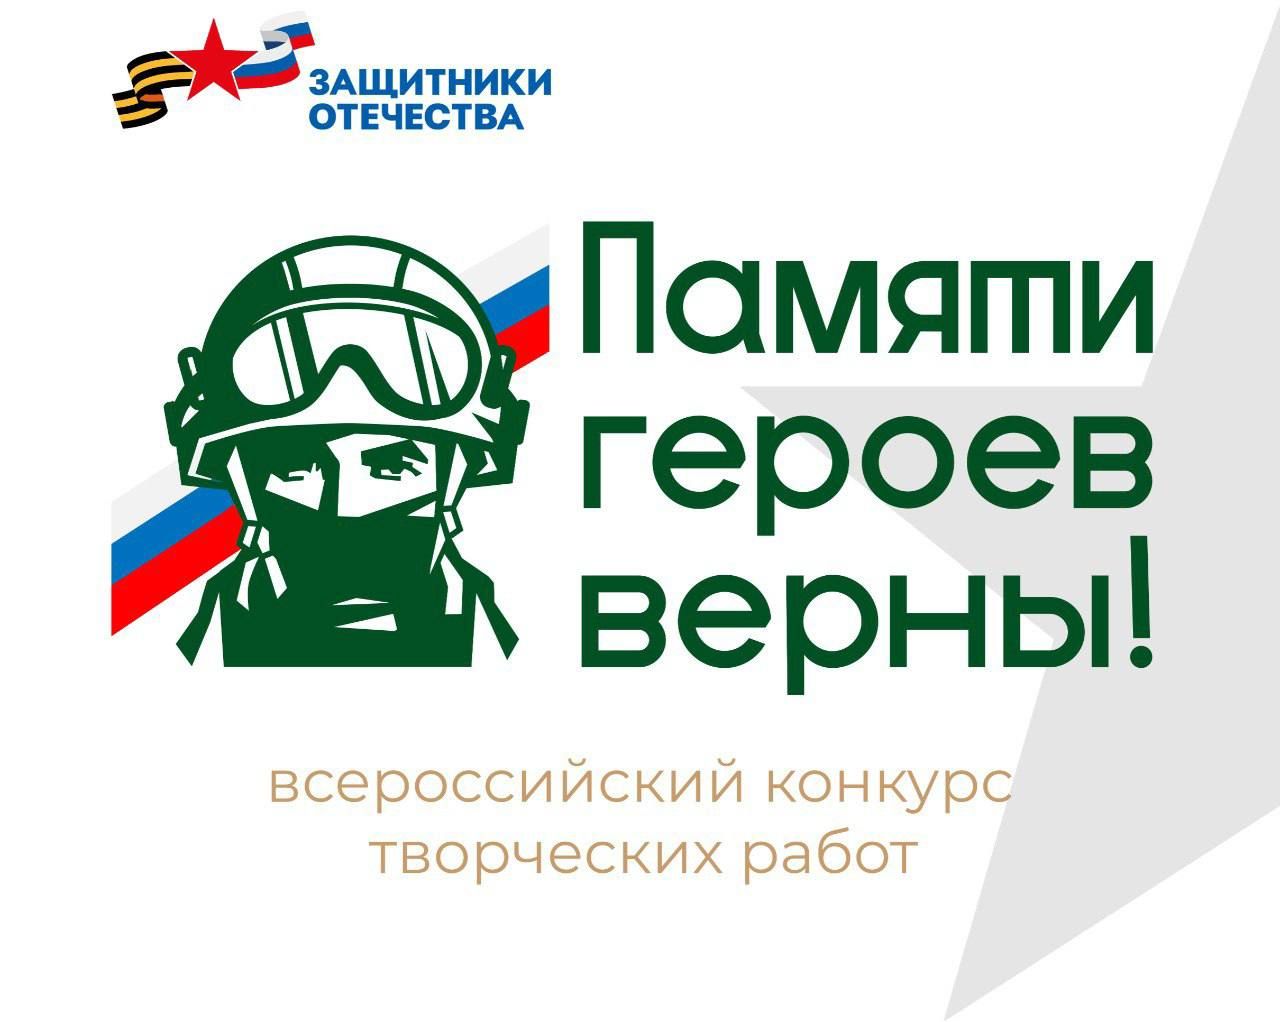 Томичей приглашают принять участие во всероссийском конкурсе «Памяти героев верны!»